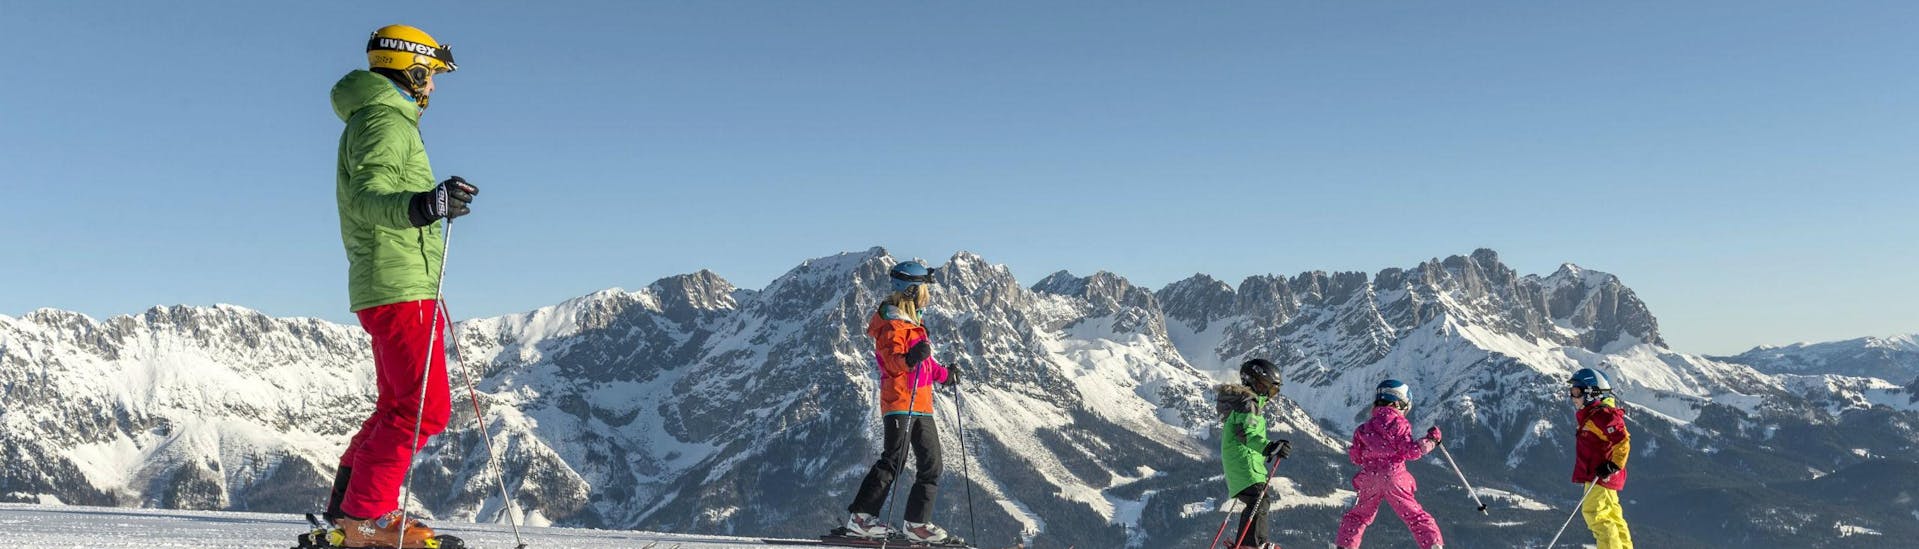 Eine Familie verbringt einen gemeinsamen Tag auf den Skipisten von Westendorf, wo örtliche Skischulen ihre Skikurse für all jene die das Skifahren lernen wollen durchführen.